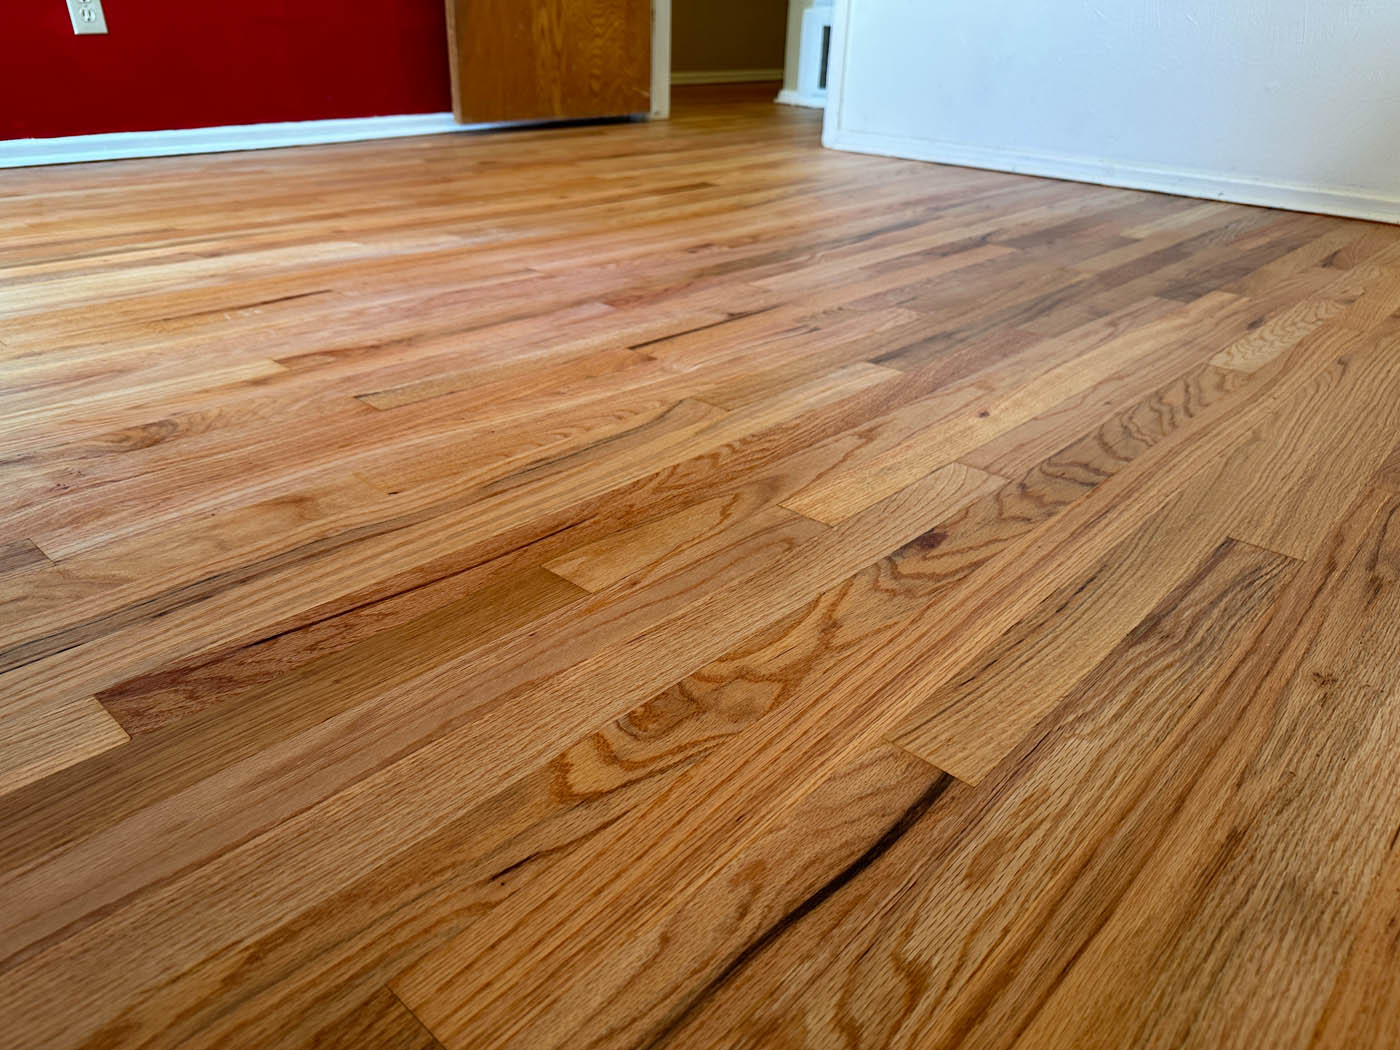 Hardwood LED cure refinishign with Footprints Floors Orlando.